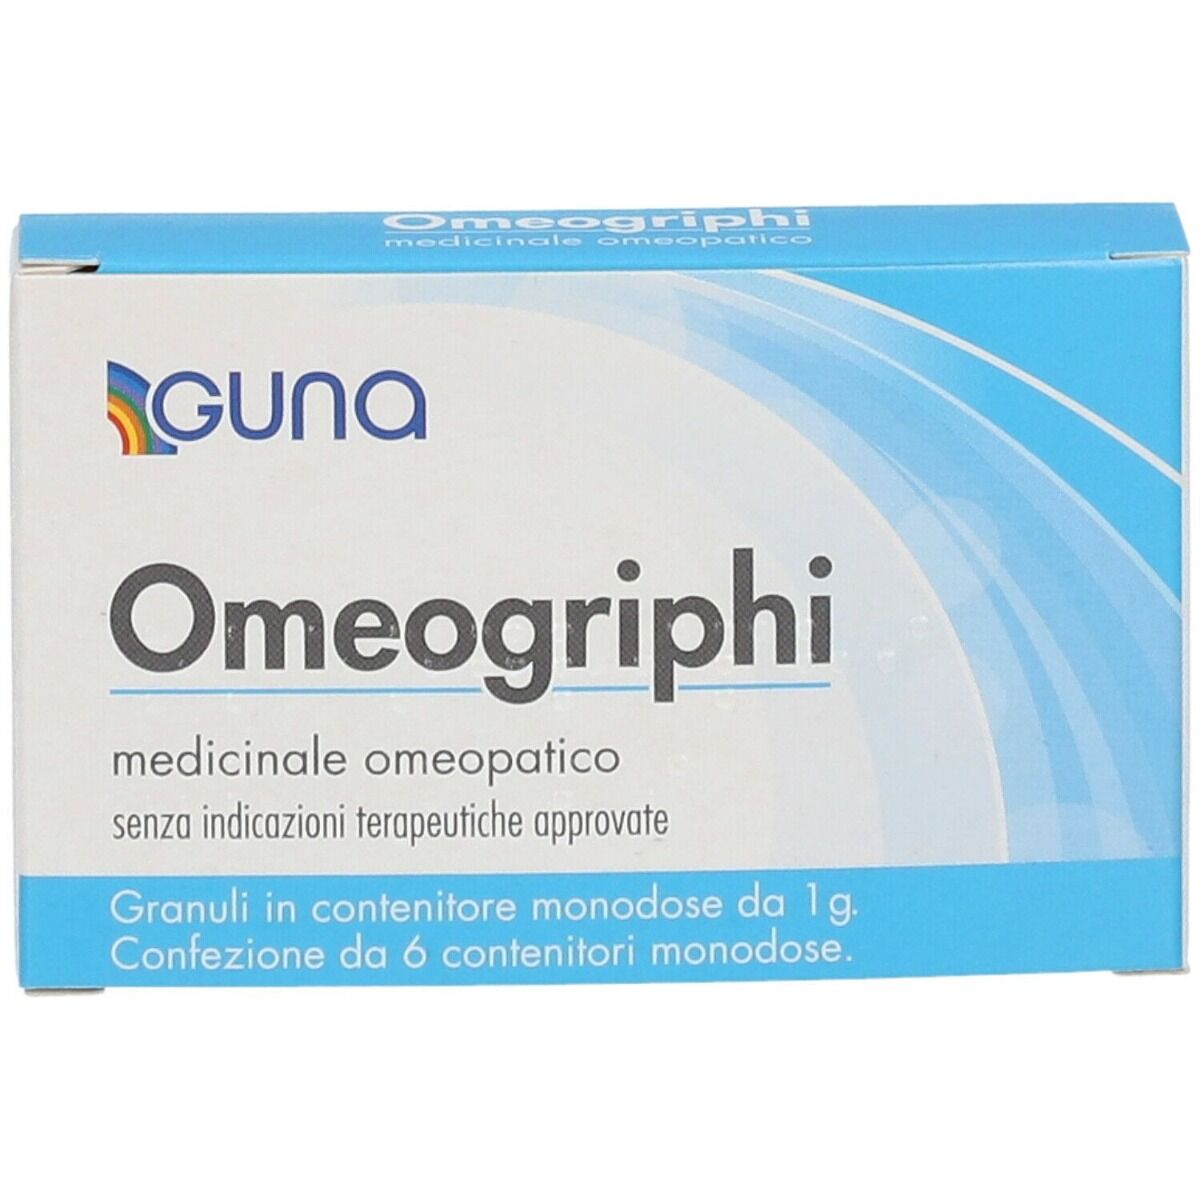 GUNA Omeogriphi 6 Contenitori Monodose 1g